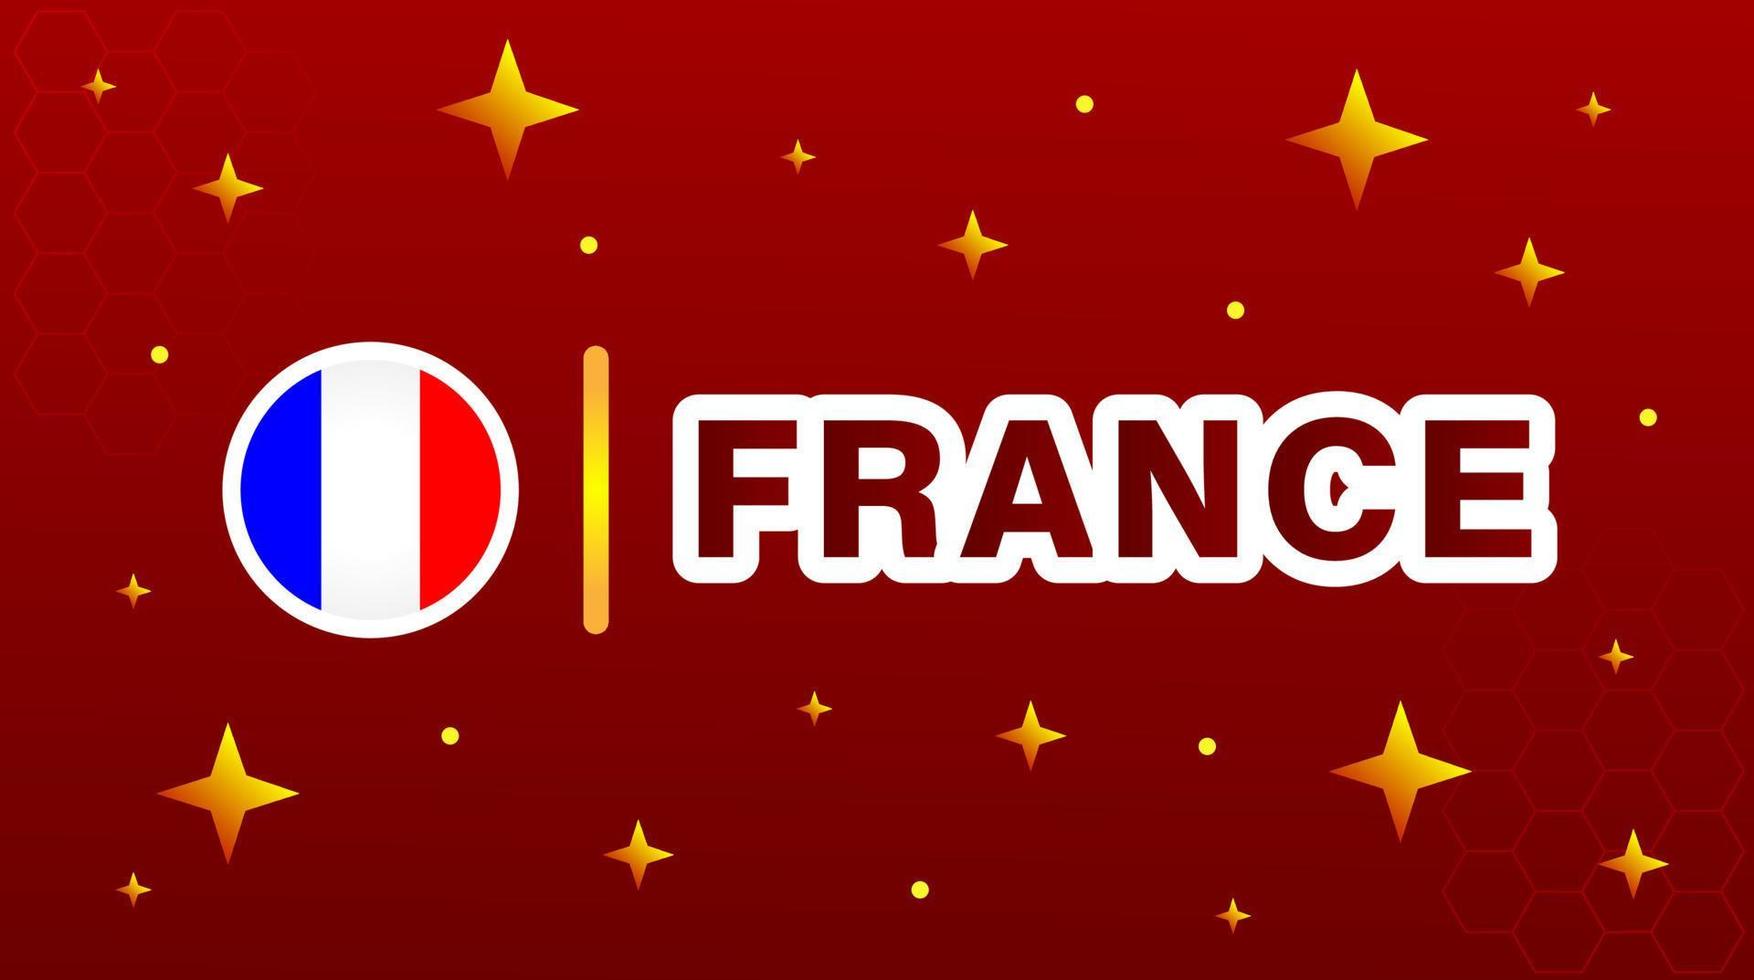 Frankreich-Flagge mit Sternen auf rotem kastanienbraunem Hintergrund. vektor